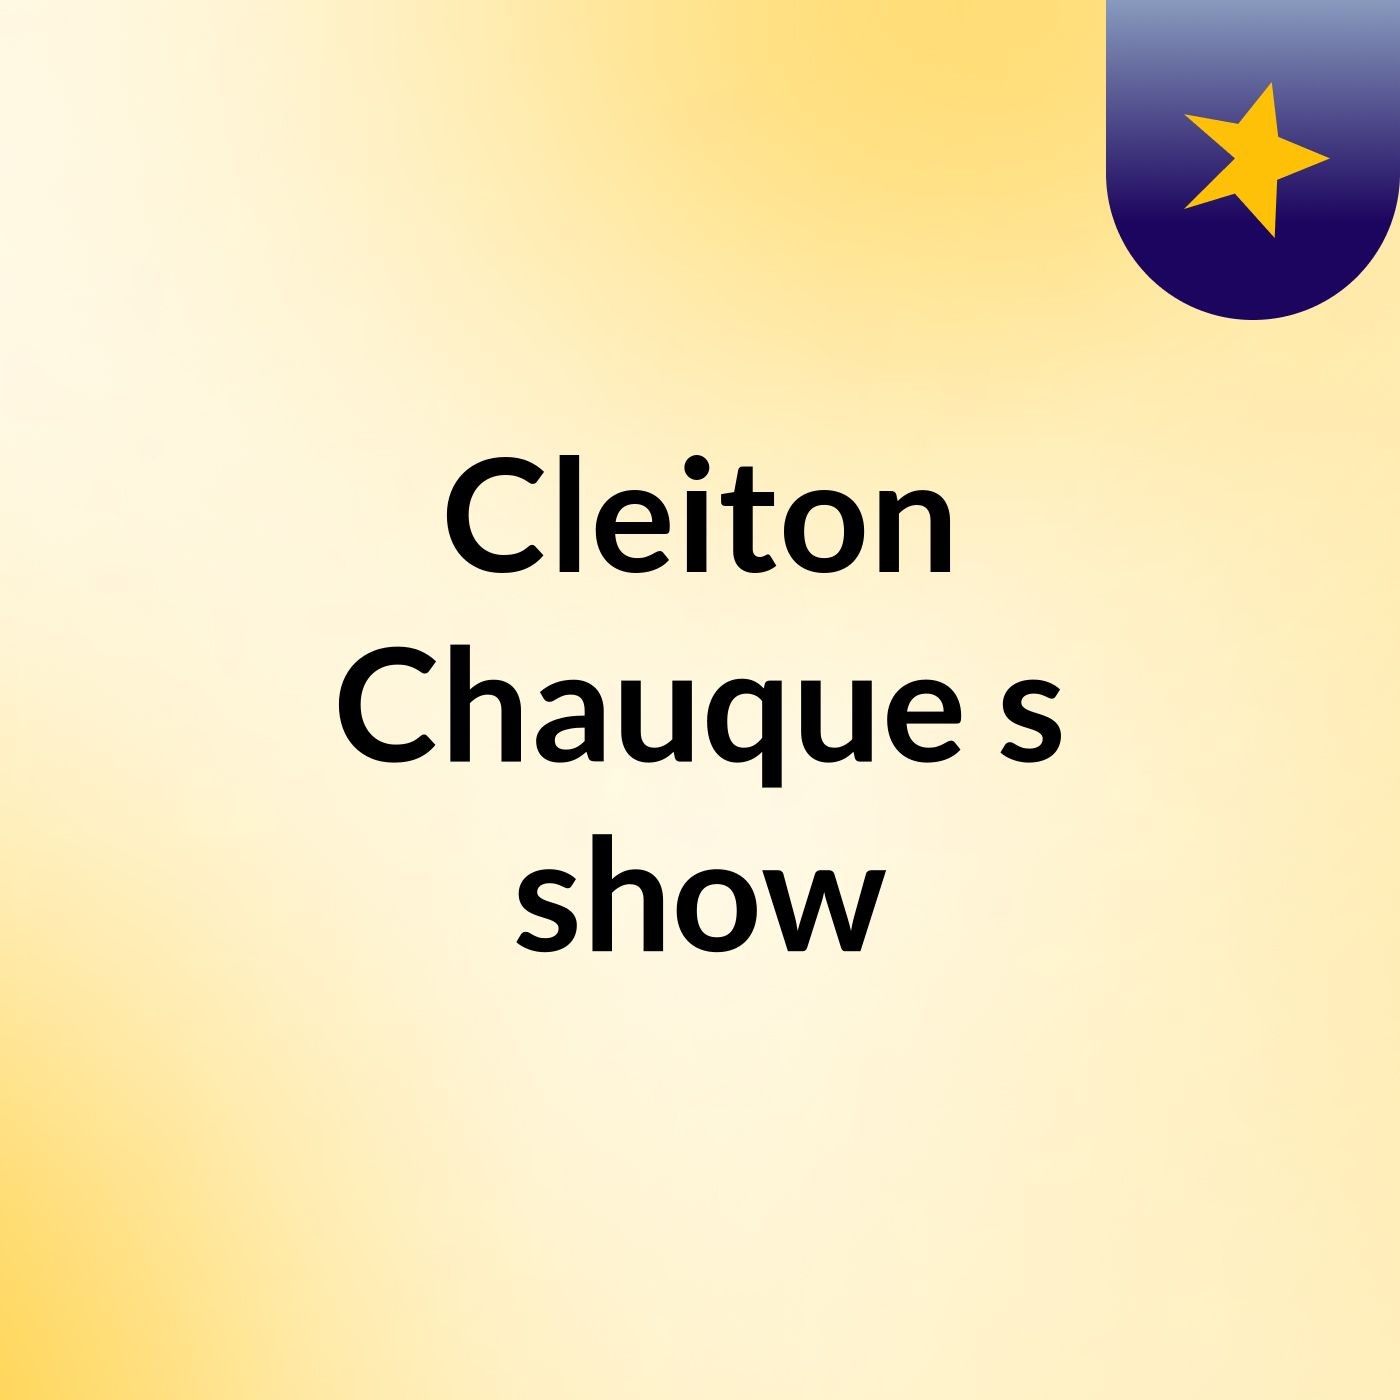 Cleiton Chauque's show